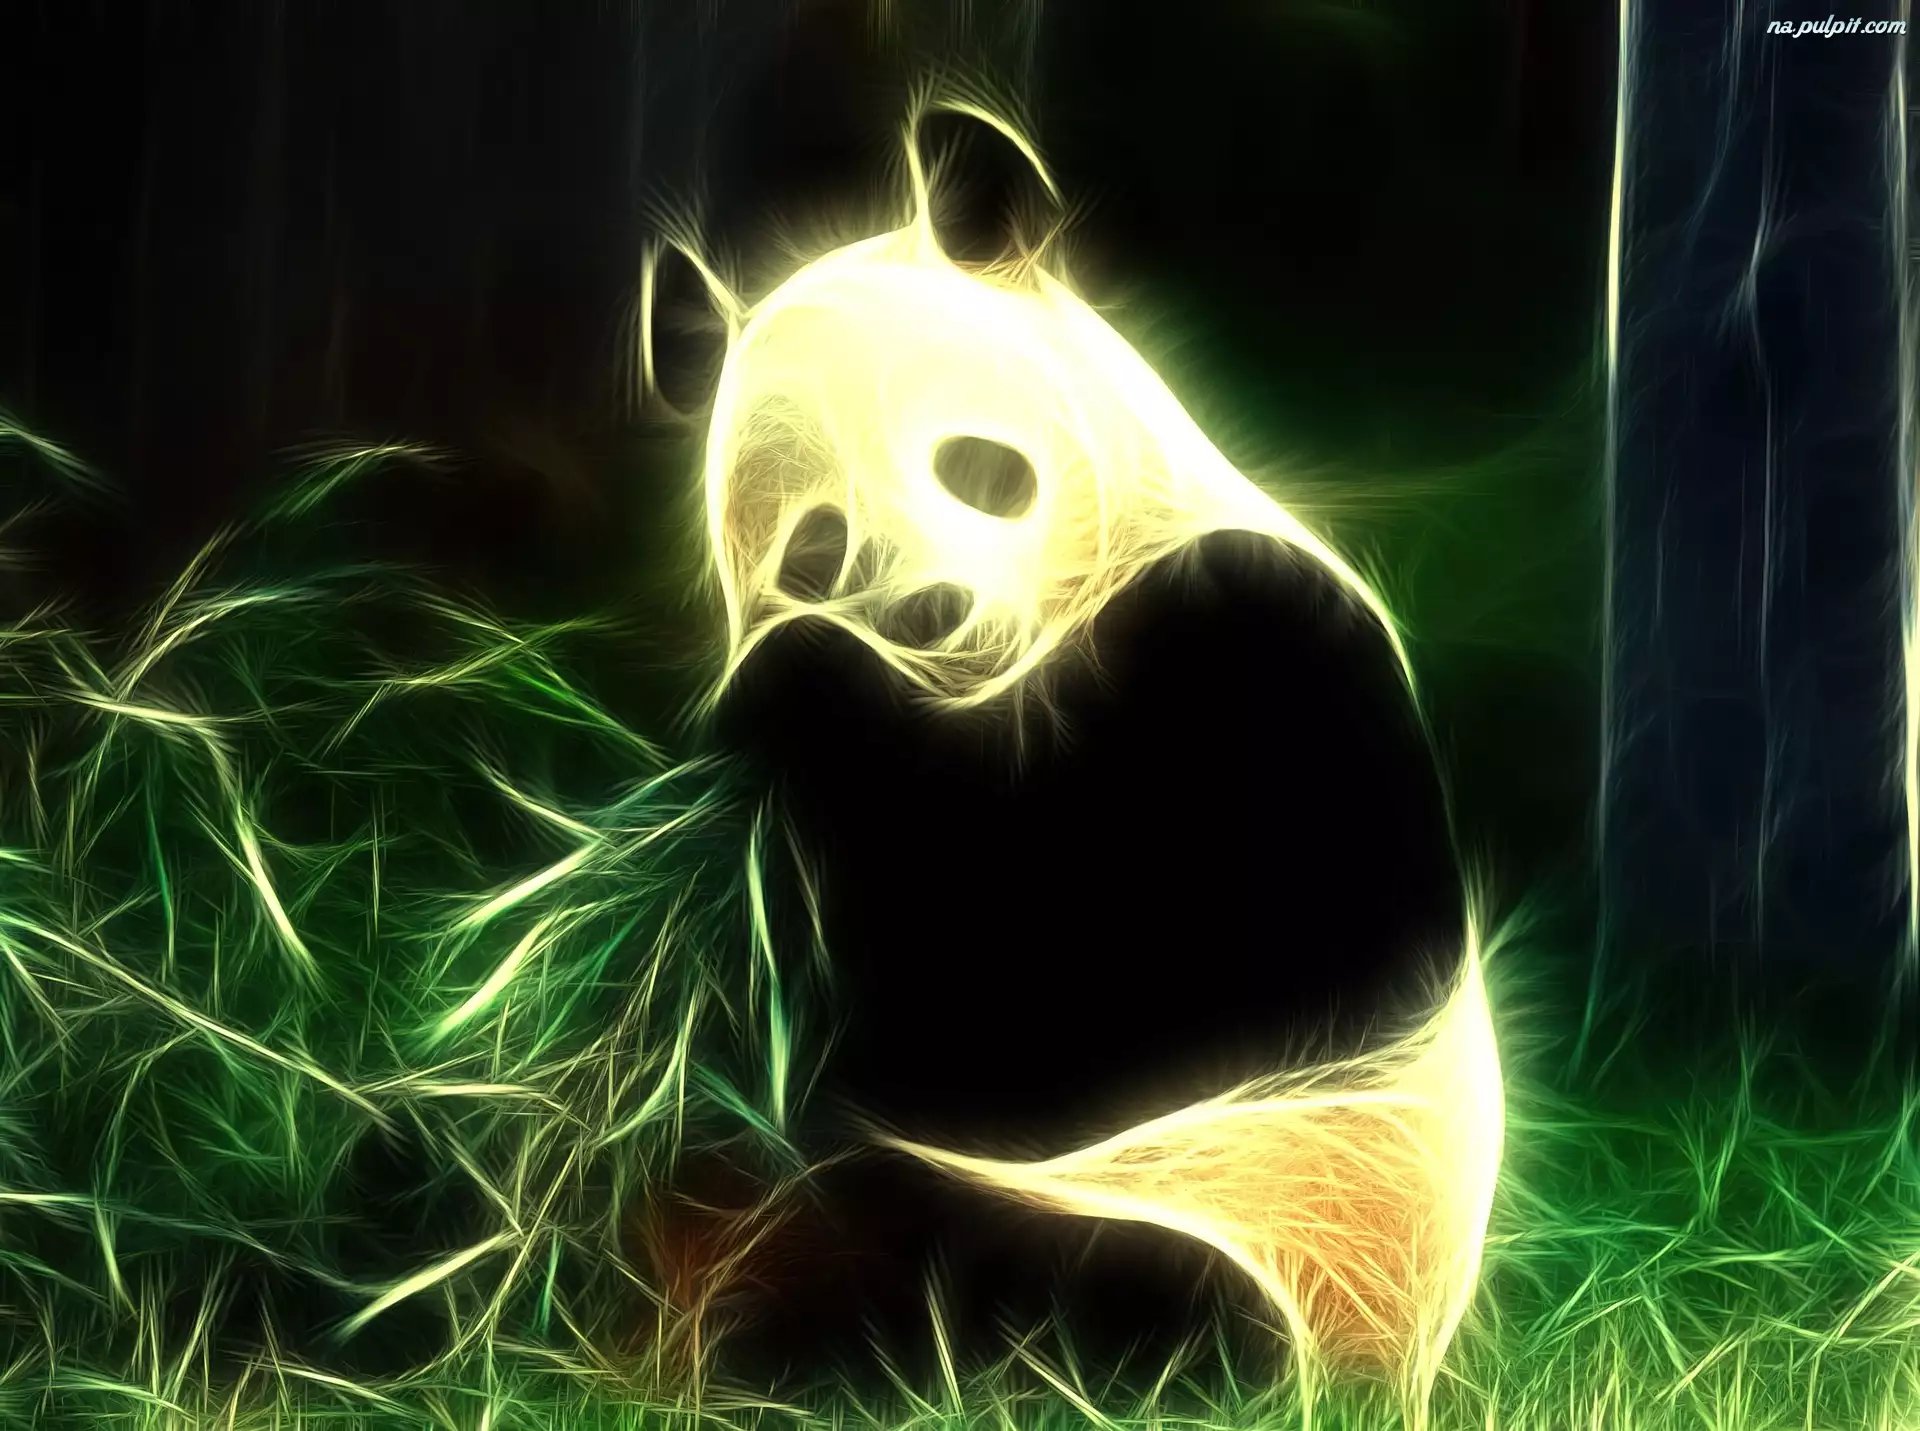 Panda, Fraktalius